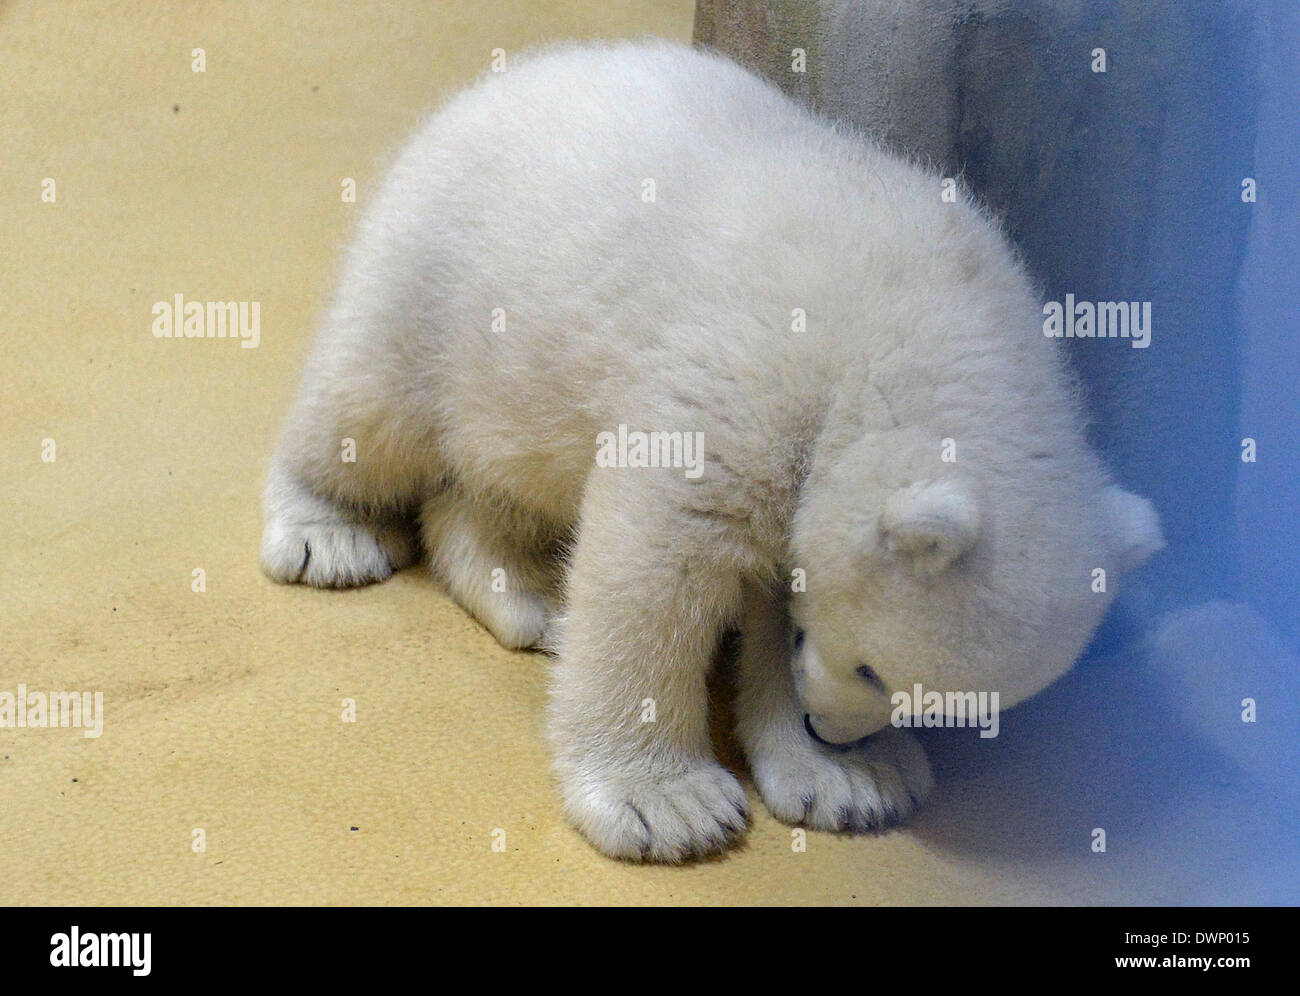 Bremerhaven, Deutschland. 12. März 2014. Ein Eisbär-Baby ist abgebildet auf der "Zoo am Meer" (lit.) Zoo am Meer) in Bremerhaven, Deutschland, 12. März 2014. Das Baby wurde am 16. Dezember 2013 geboren und jetzt lässt seine Geburt Höhle zum ersten Mal. Foto: CARMEN JASPERSEN/Dpa/Alamy Live News Stockfoto